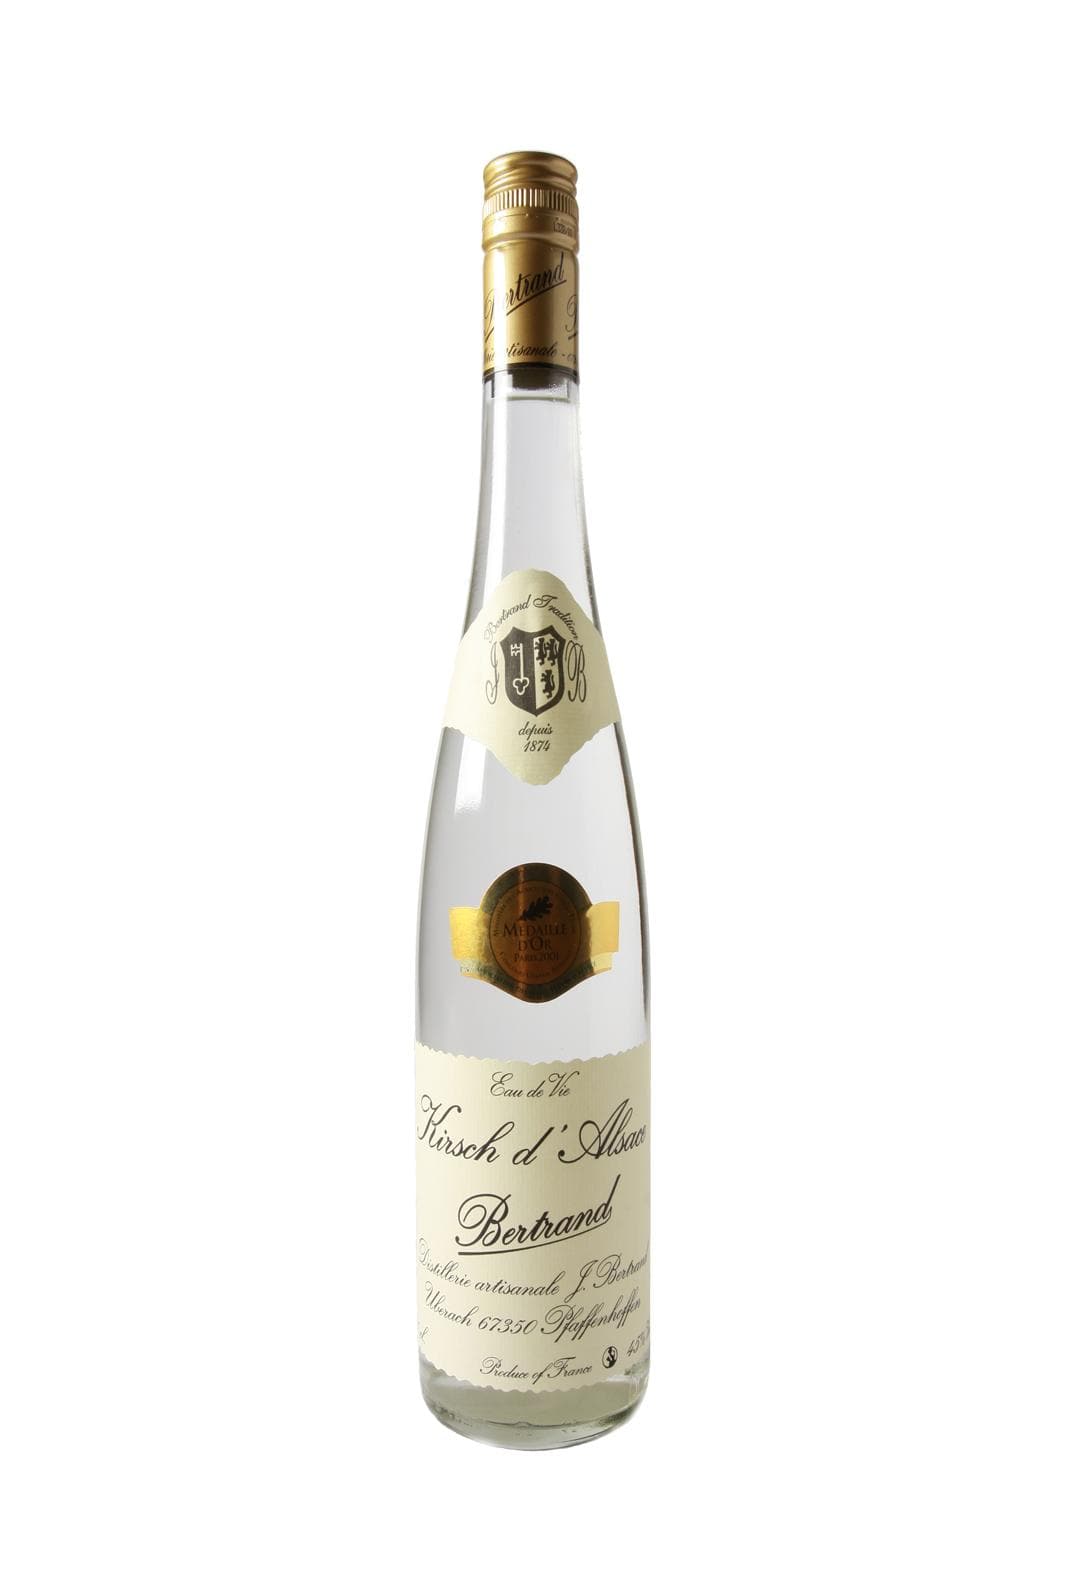 Bertrand Eau de Vie de Kirsch (Cherry) 45% 700ml | Liqueurs | Shop online at Spirits of France